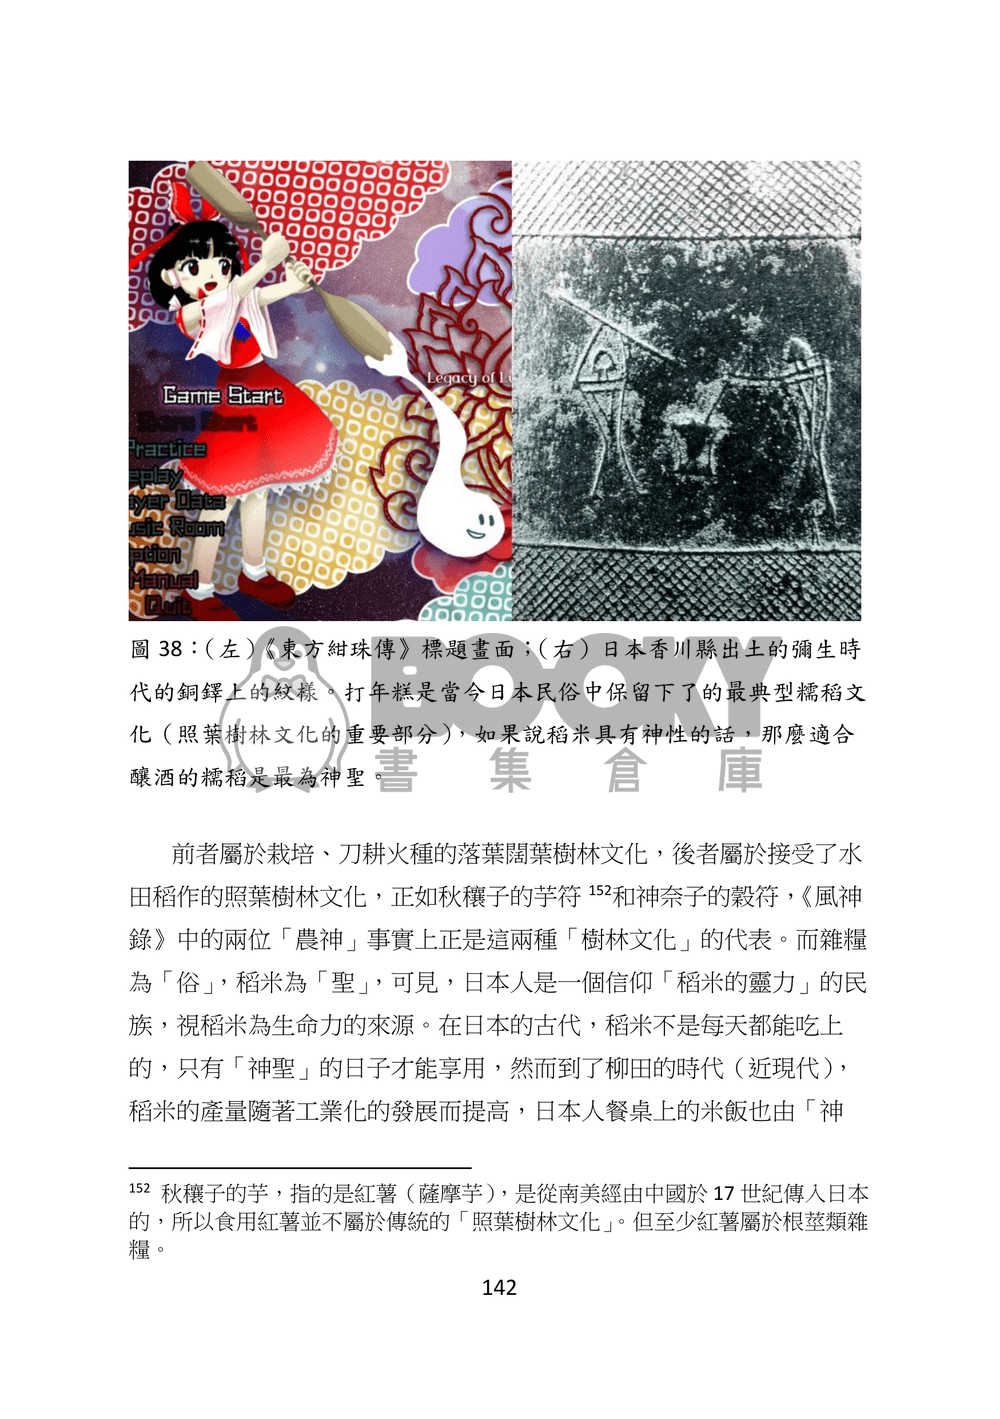 東方文化學刊 第六期 神道文化的核心 試閱圖片